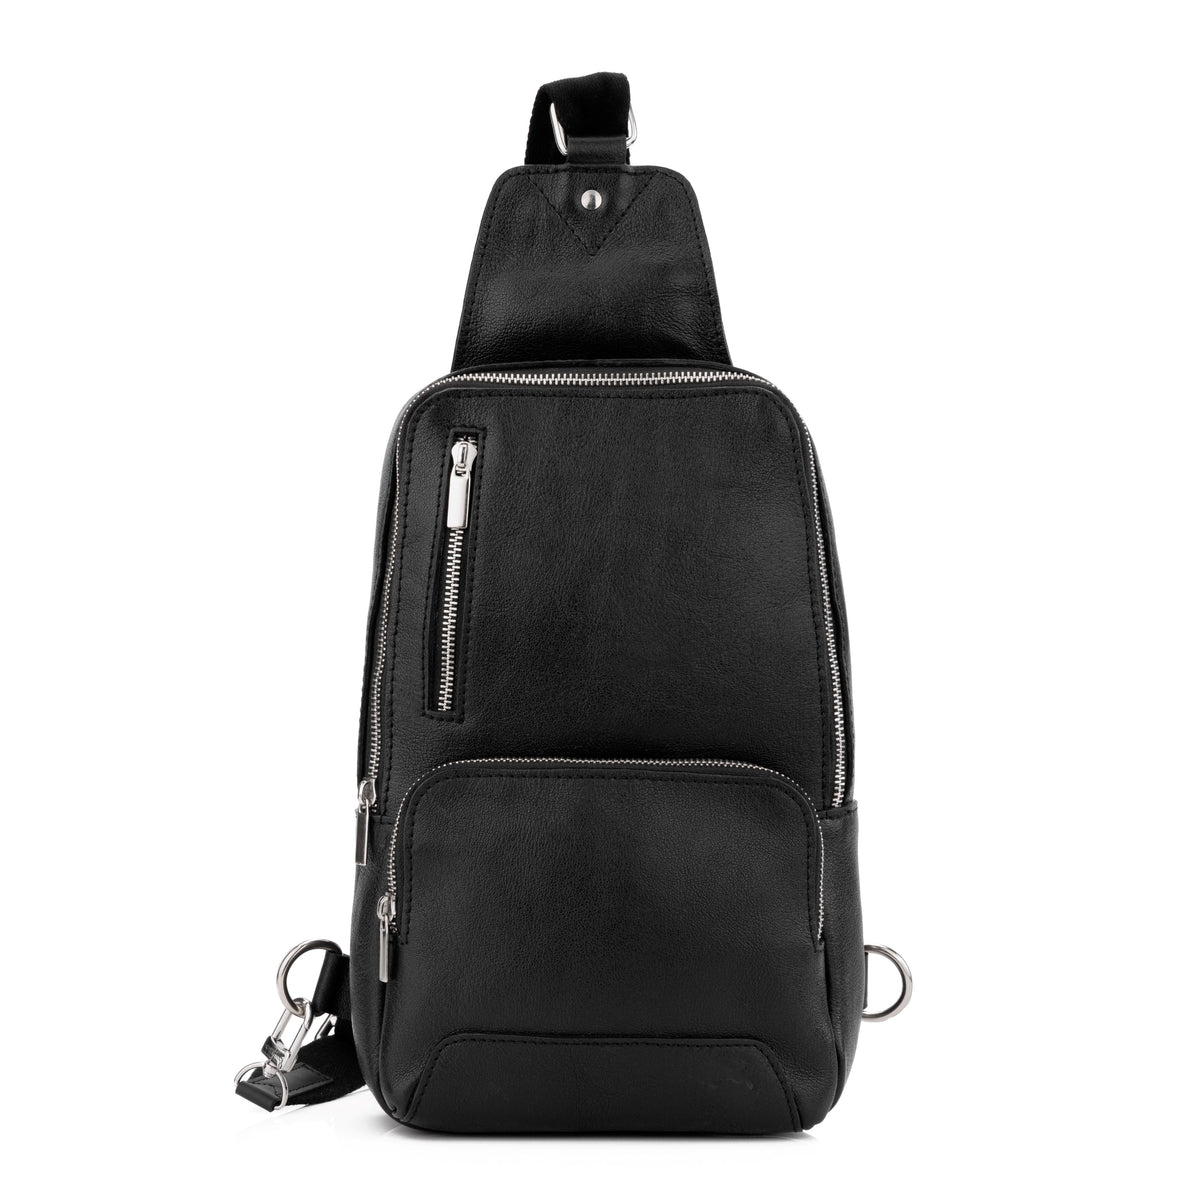 Carbon Black Leather Sling Bag – Levinson Leather Goods